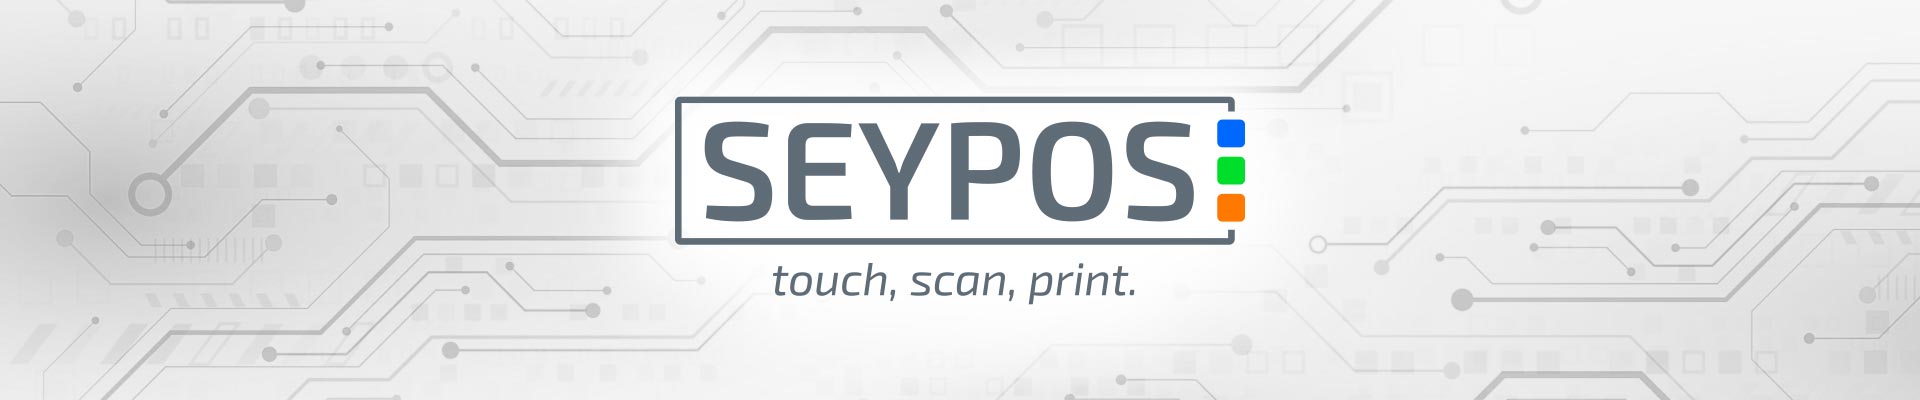 Seypos - Contacto